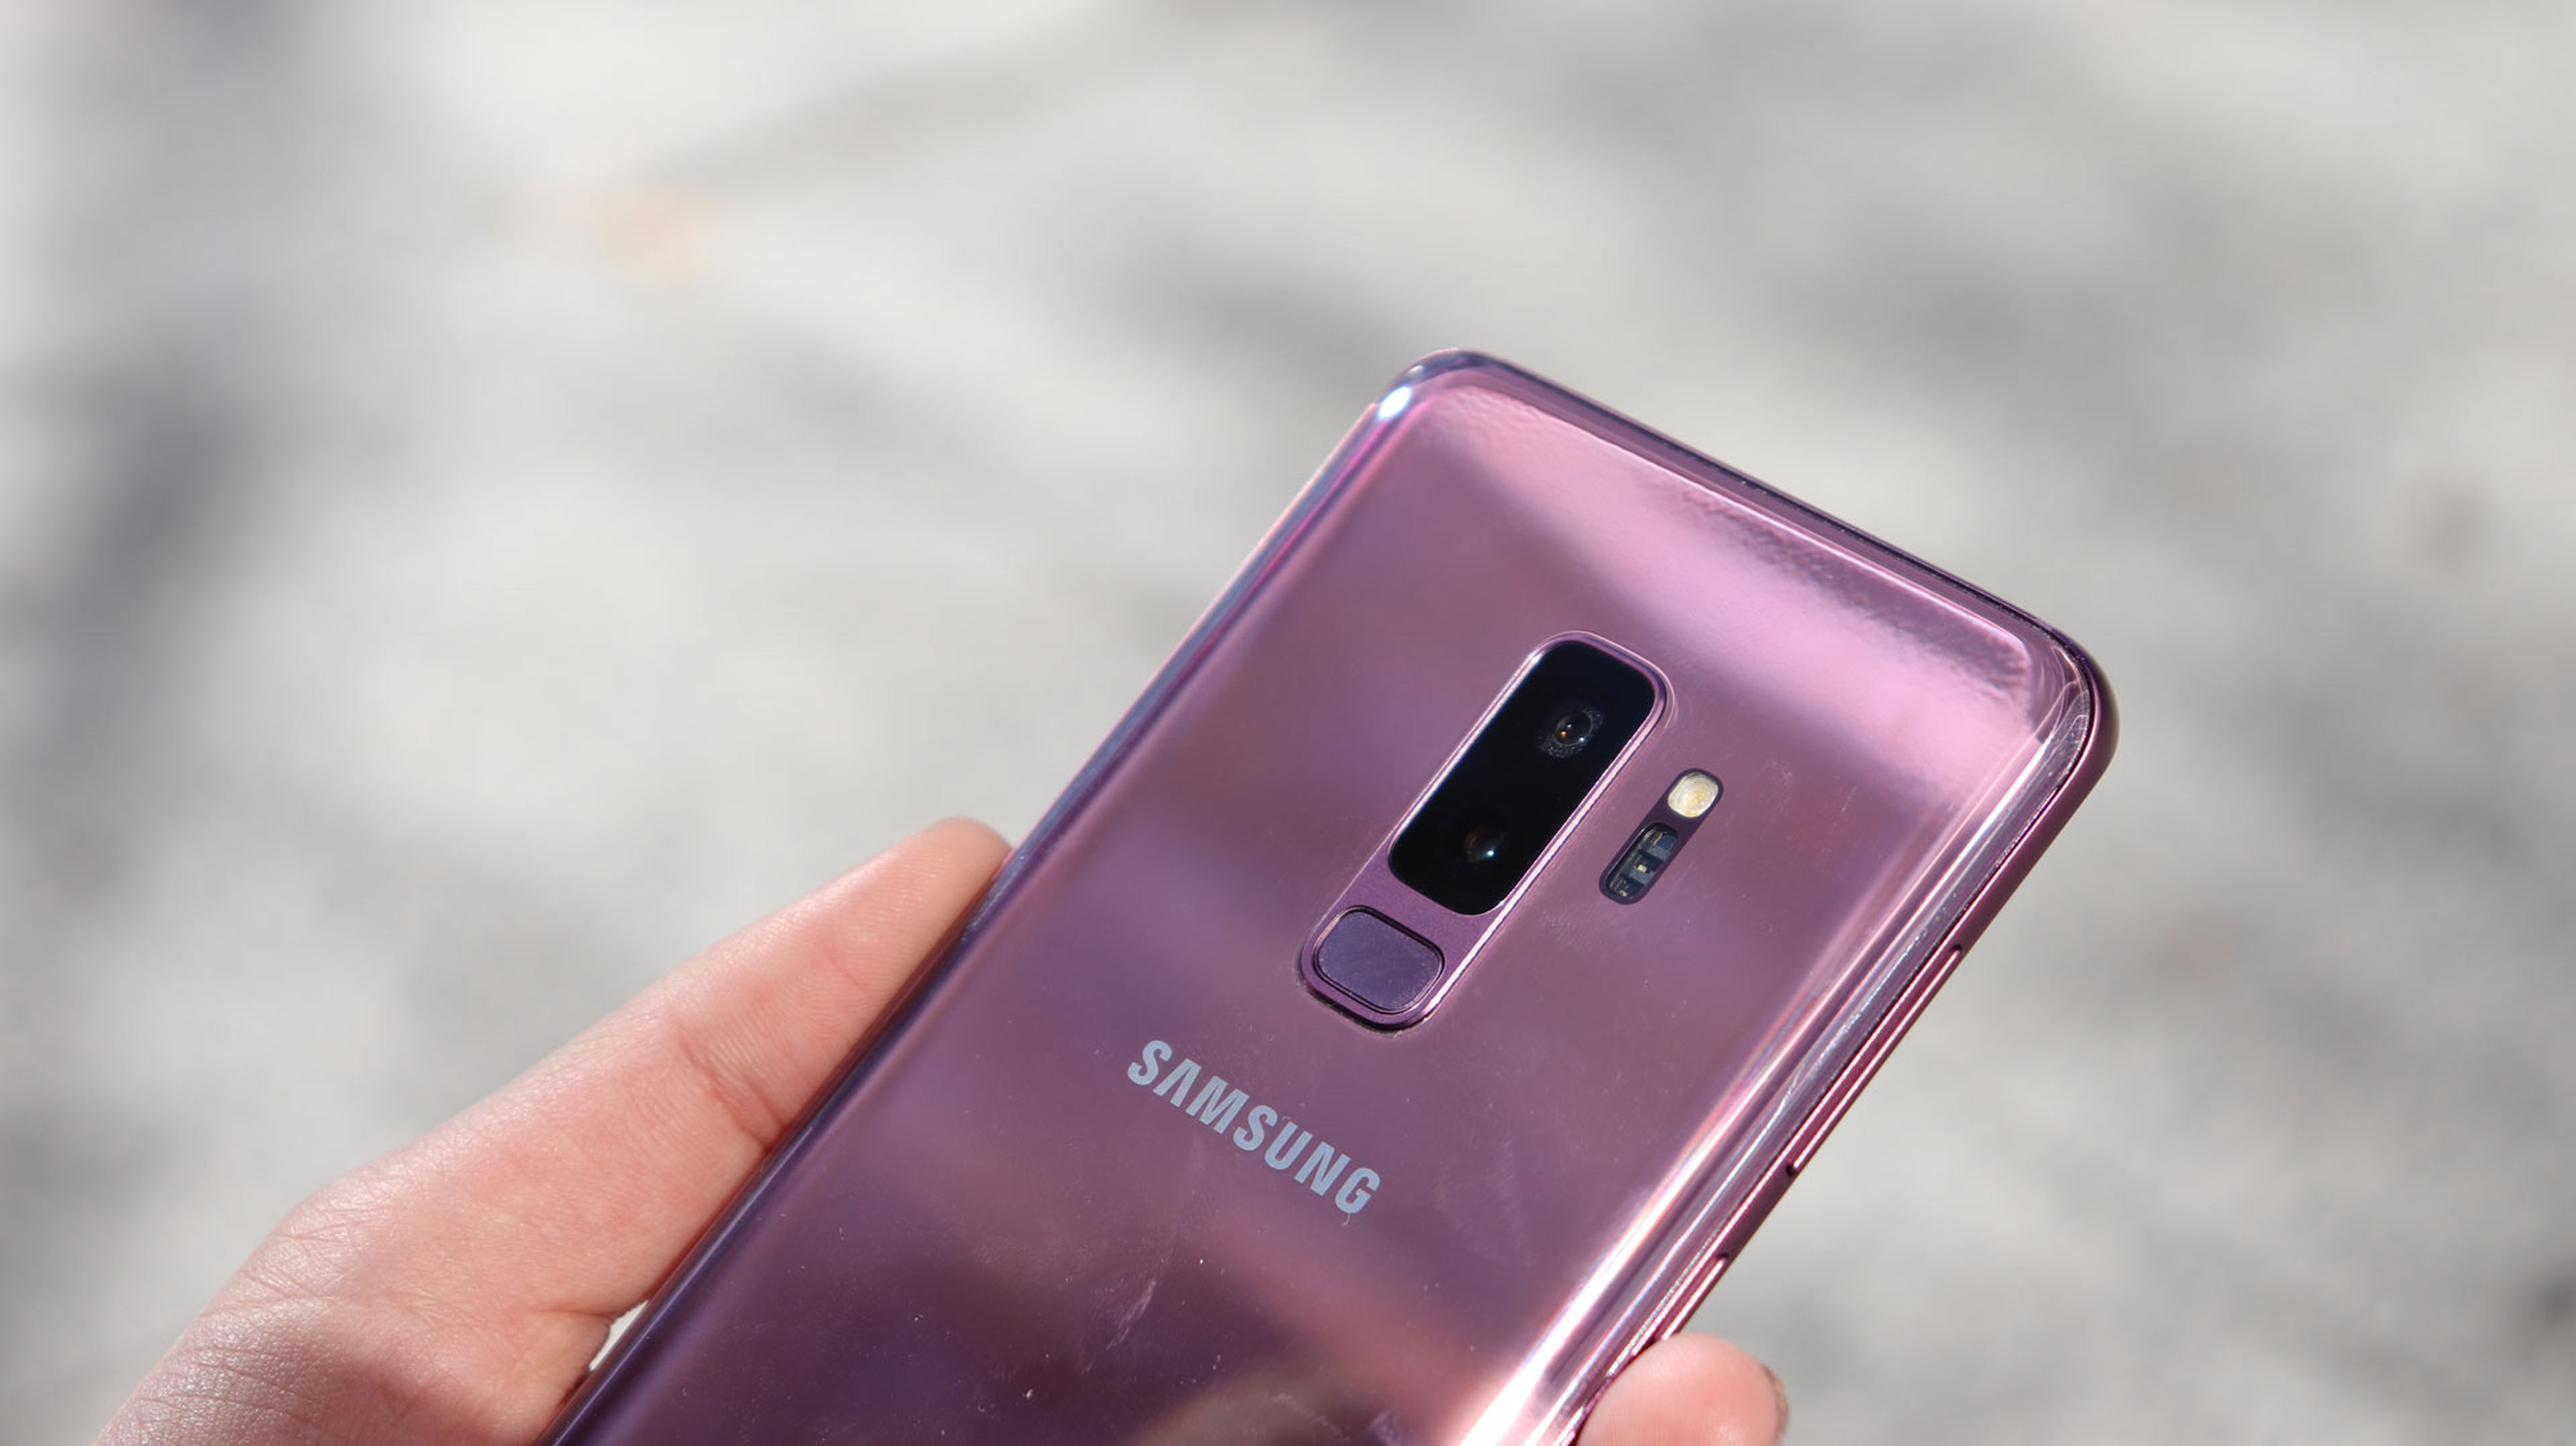 Así luce en las manos el Samsung Galaxy S9+ en la versión de color lila